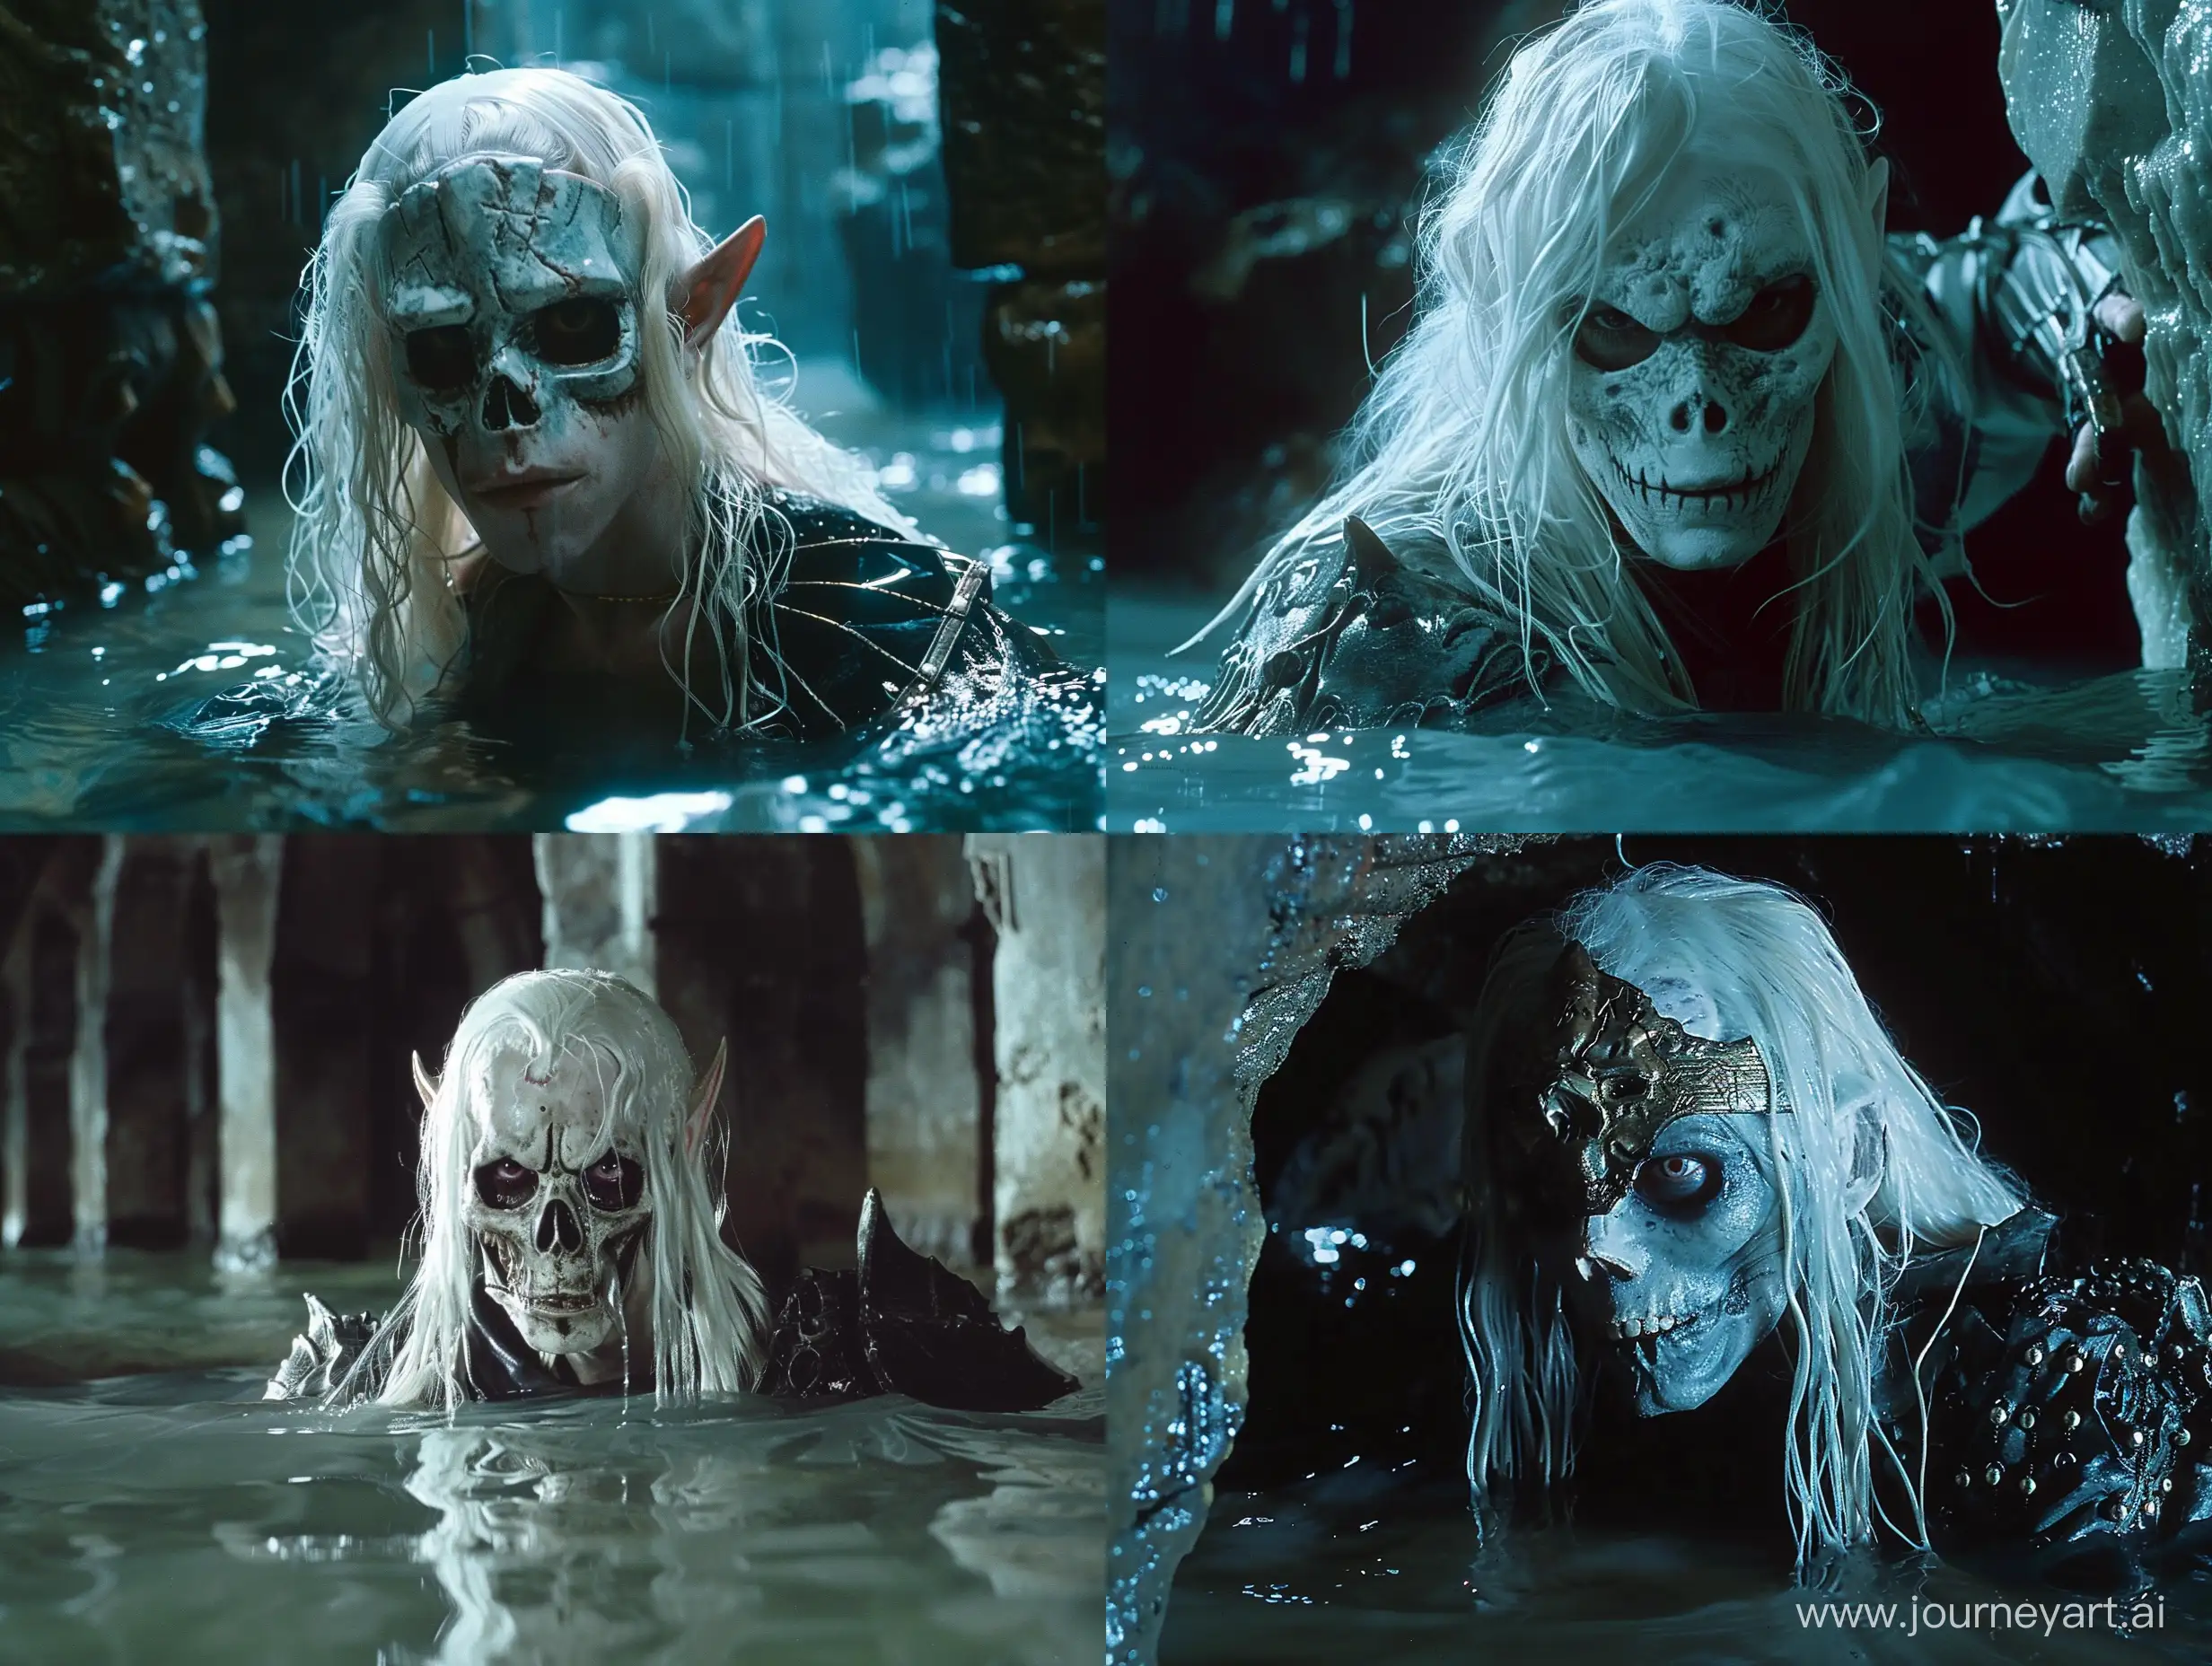 Undead-Elven-Knight-Emerges-in-Flooded-Mausoleum-Catacomb-Dark-Fantasy-Art